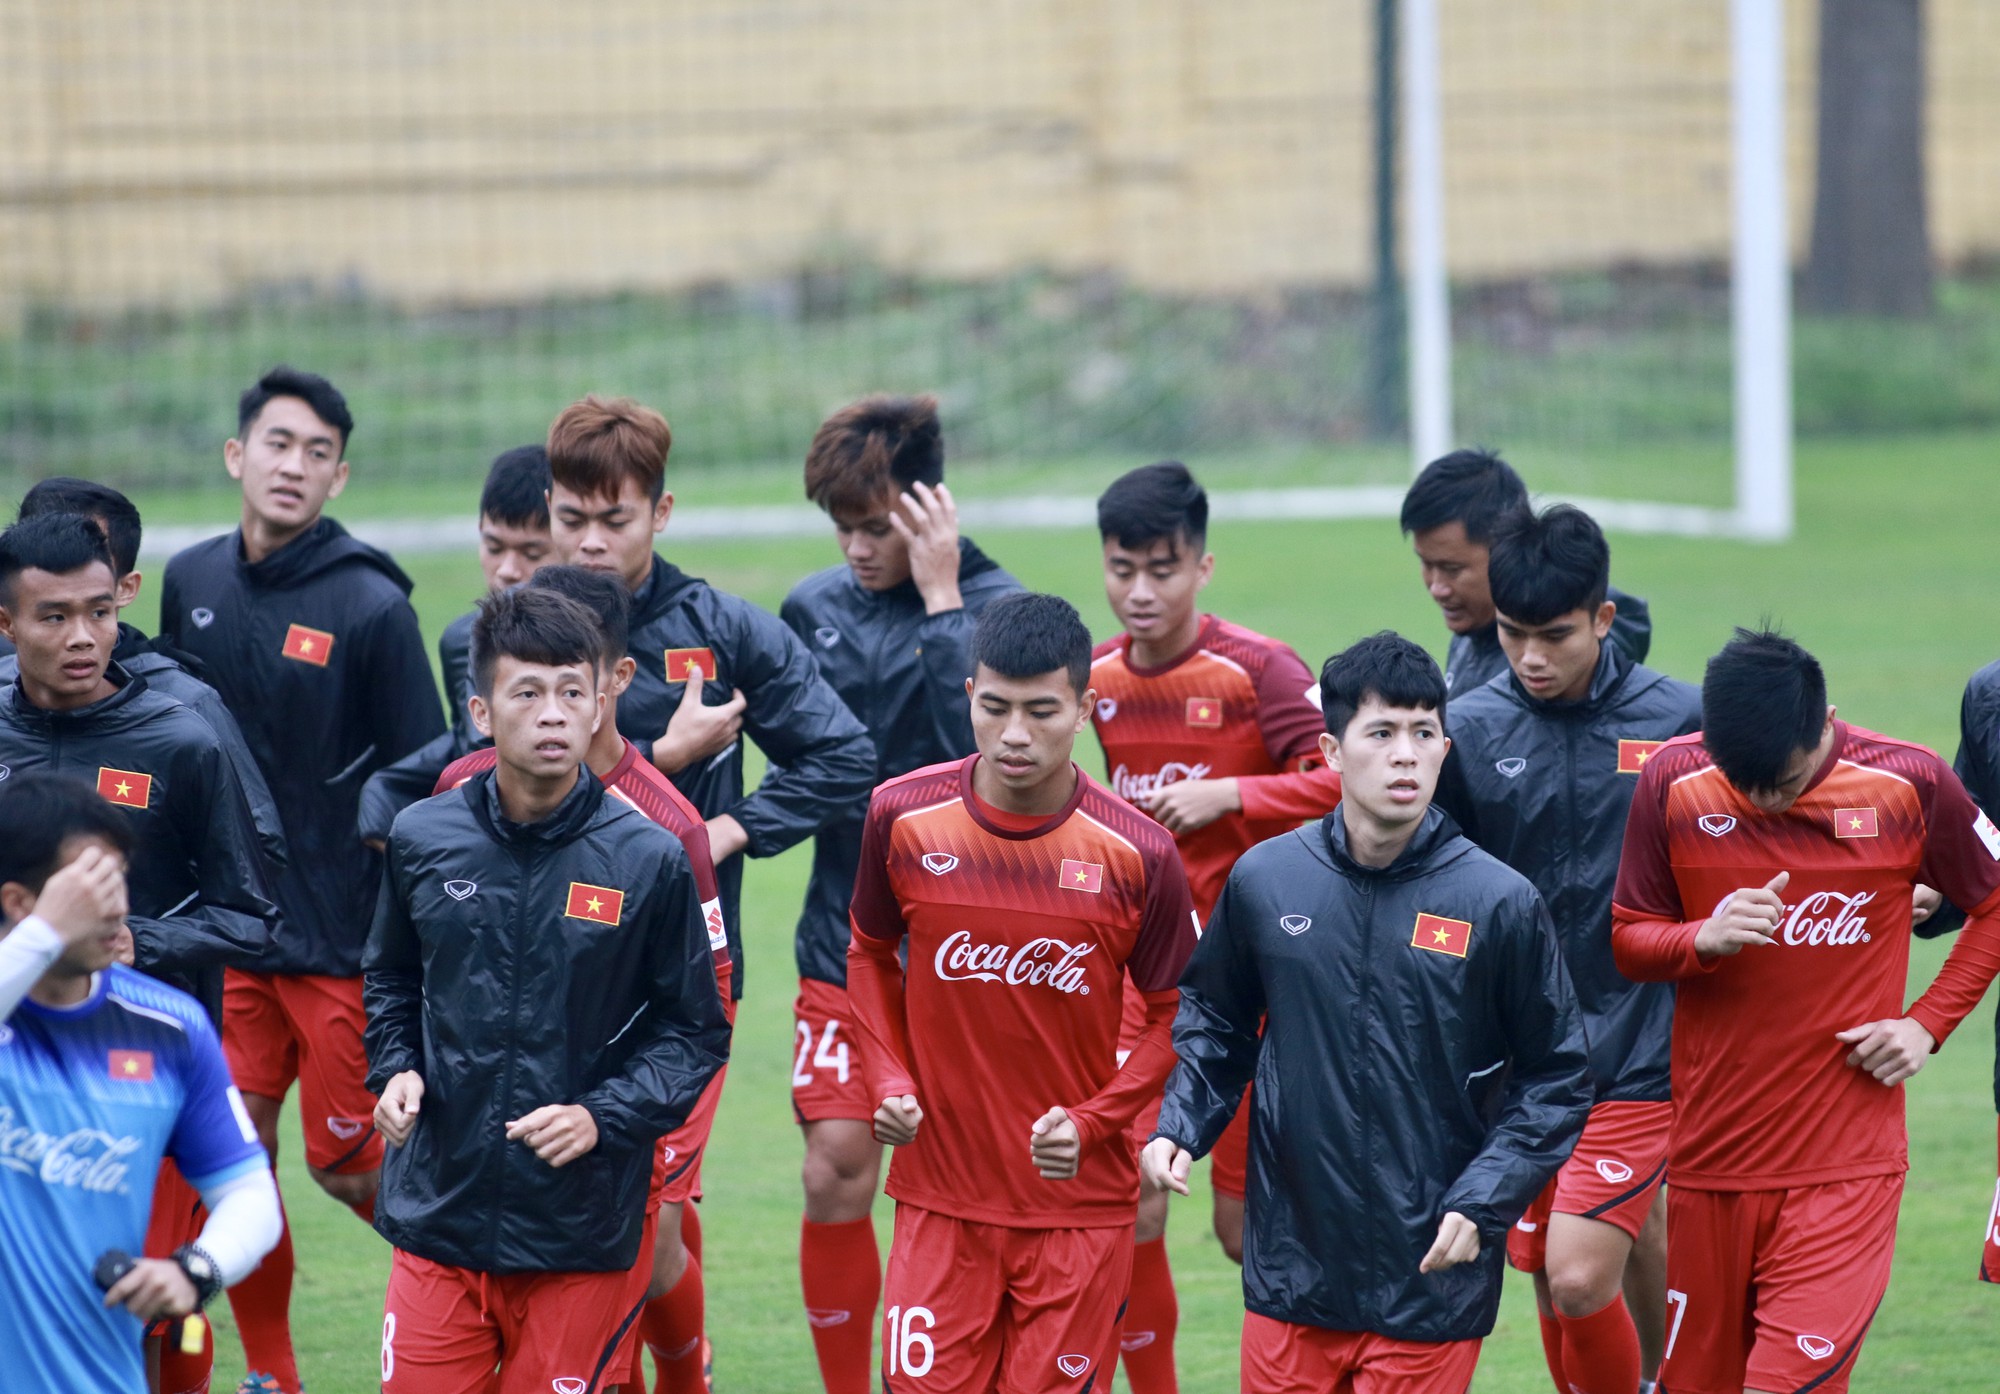 Liệu rằng Quang Hải sẽ là 'vua phá lưới nội' tại V-League 2021?